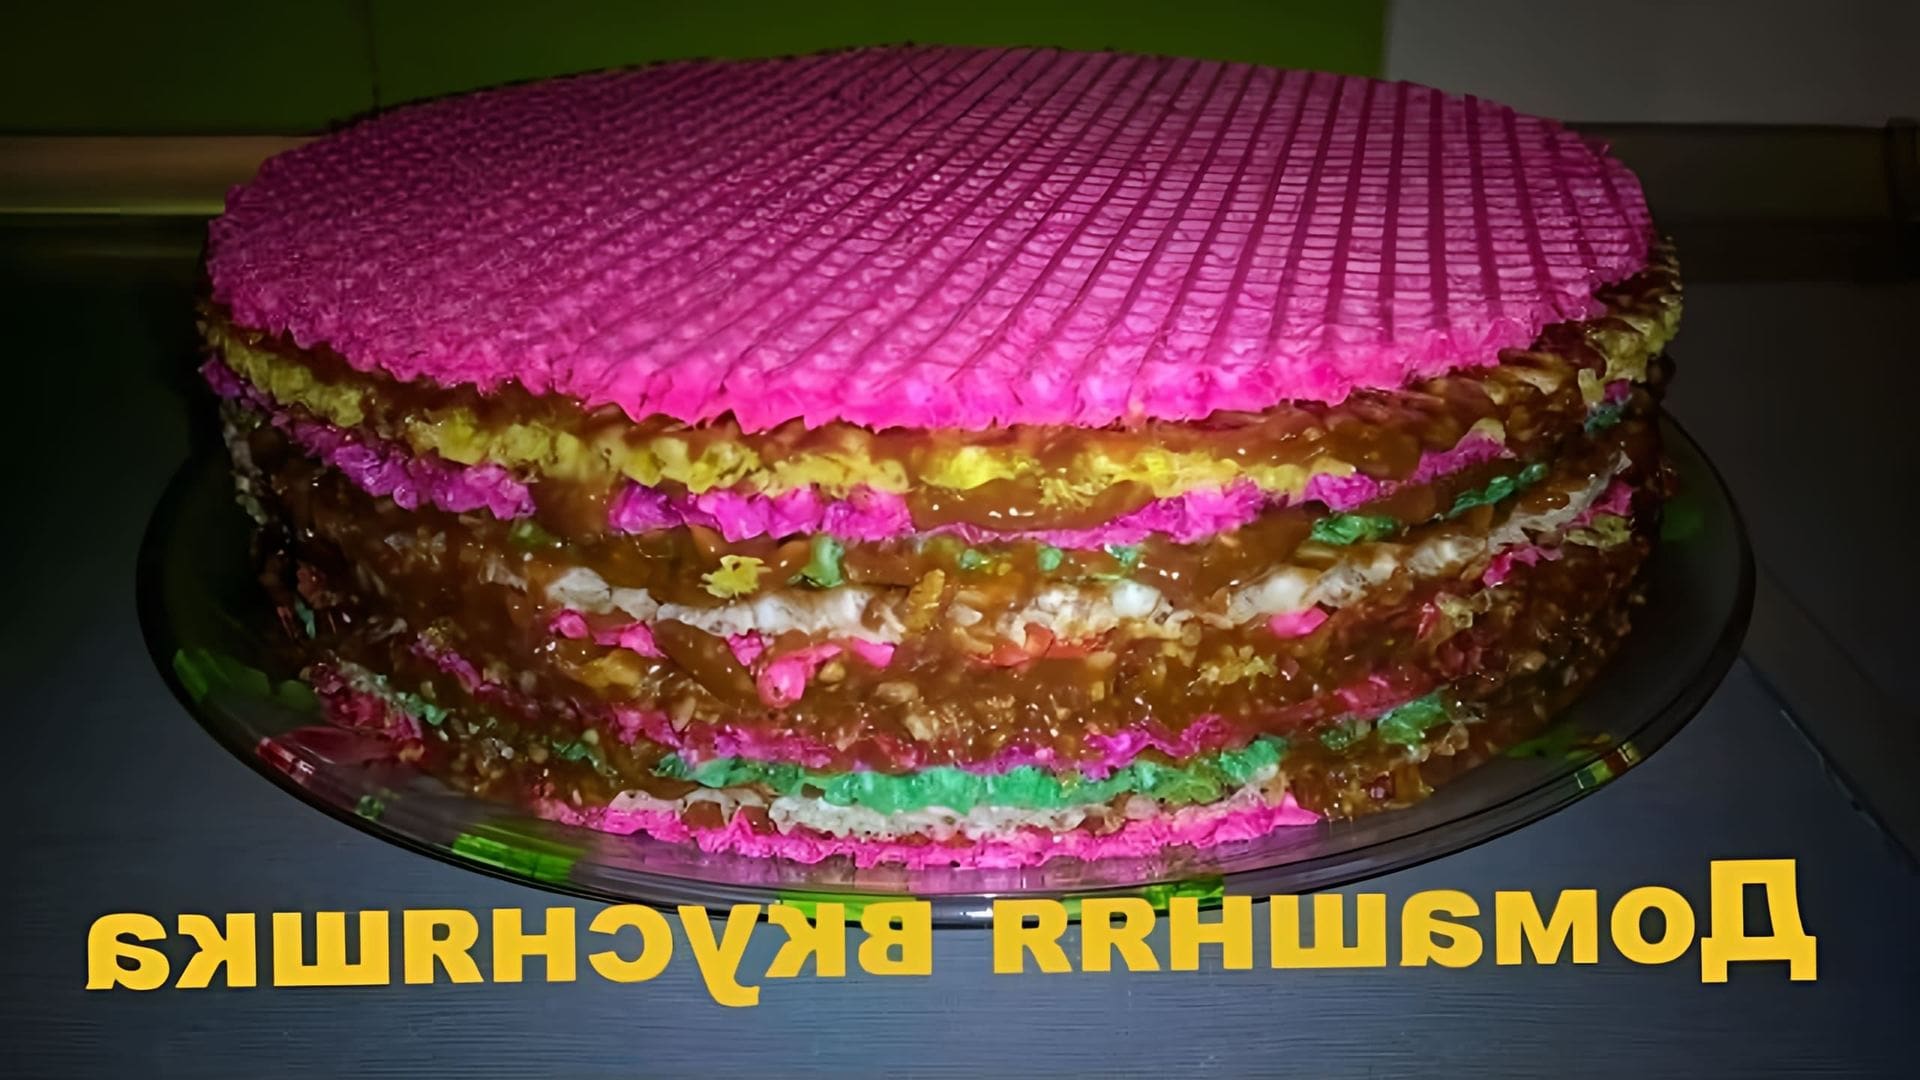 В этом видео демонстрируется рецепт приготовления вафельного торта со сгущенкой и щербетом